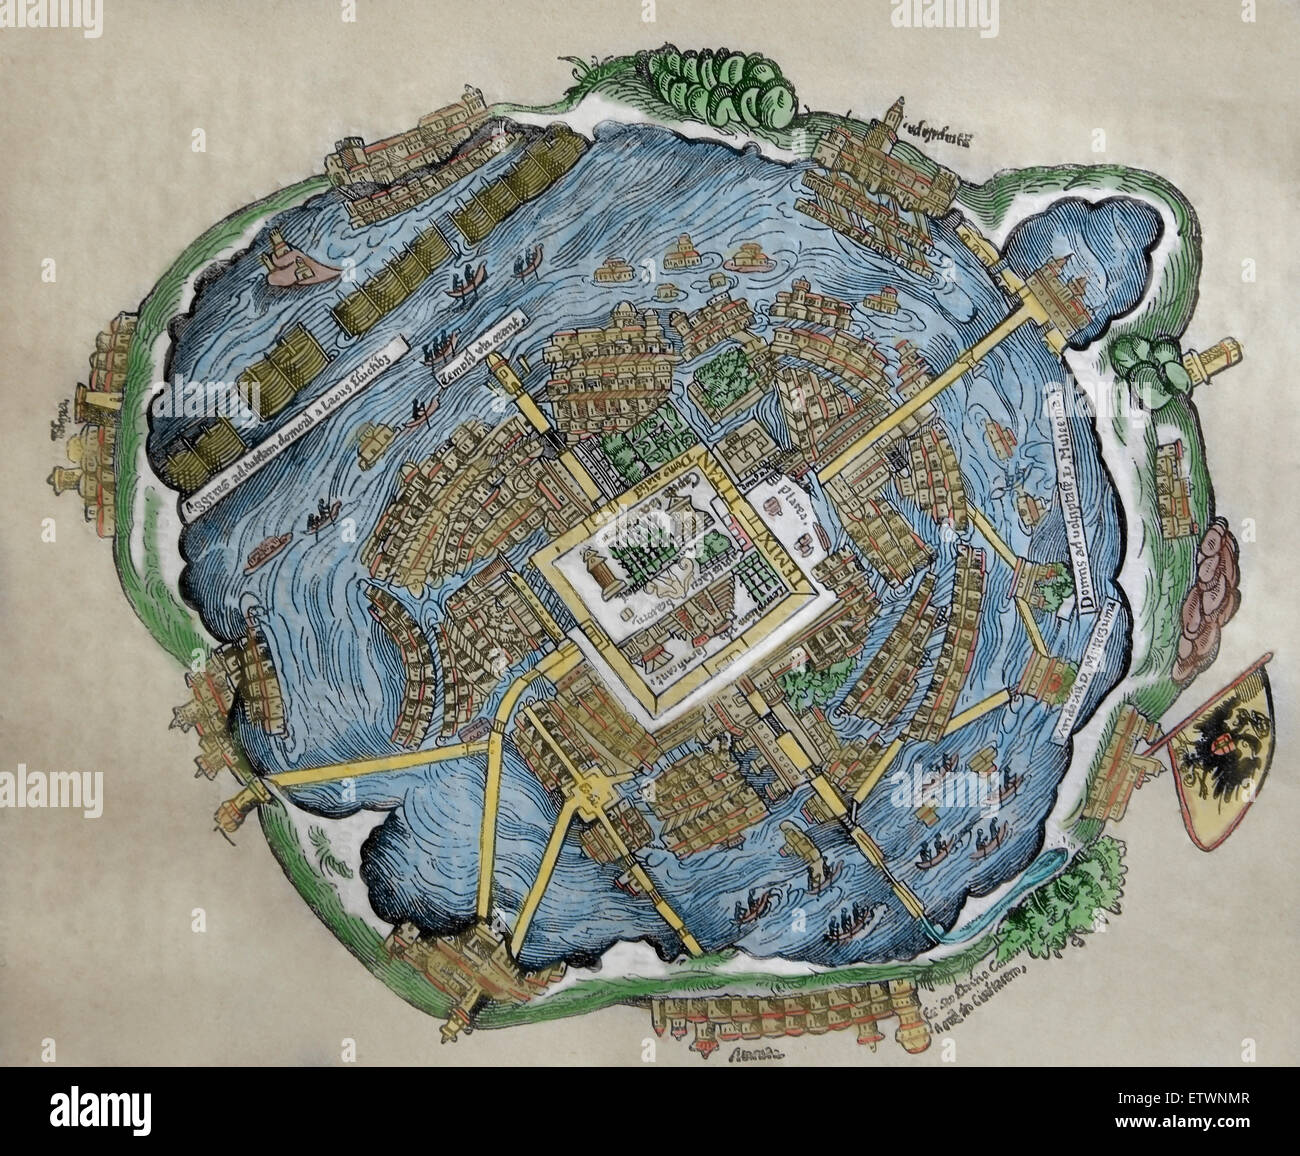 Mappa della capitale azteca. Tenochtitlan. Hernan Cortes' s lettere, Norimberga, 1524. Colore. Foto Stock